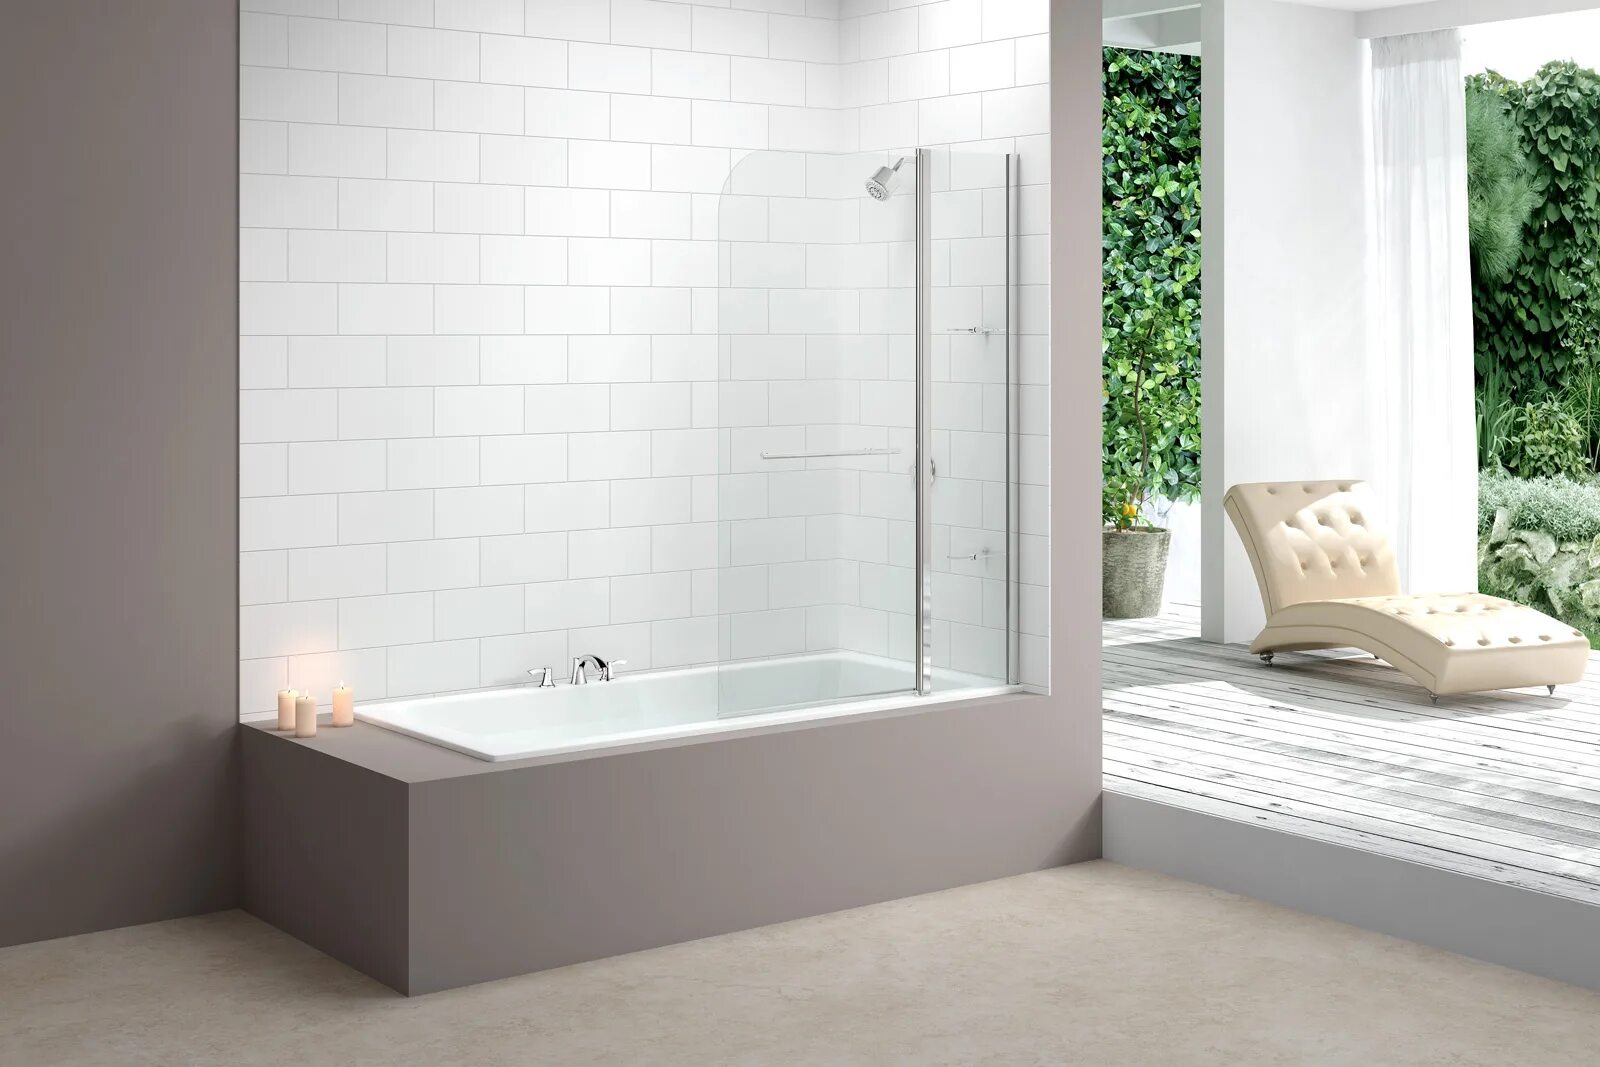 Стеклянная шторка perfect House Basic Arica 800x400 mm. Стеклянная шторка al-1670 700x1500мм. Стеклянная шторка для ванной Акватек Вирго. Стеклянная шторка на ванну 800х1800. Стеклянный экран для ванны